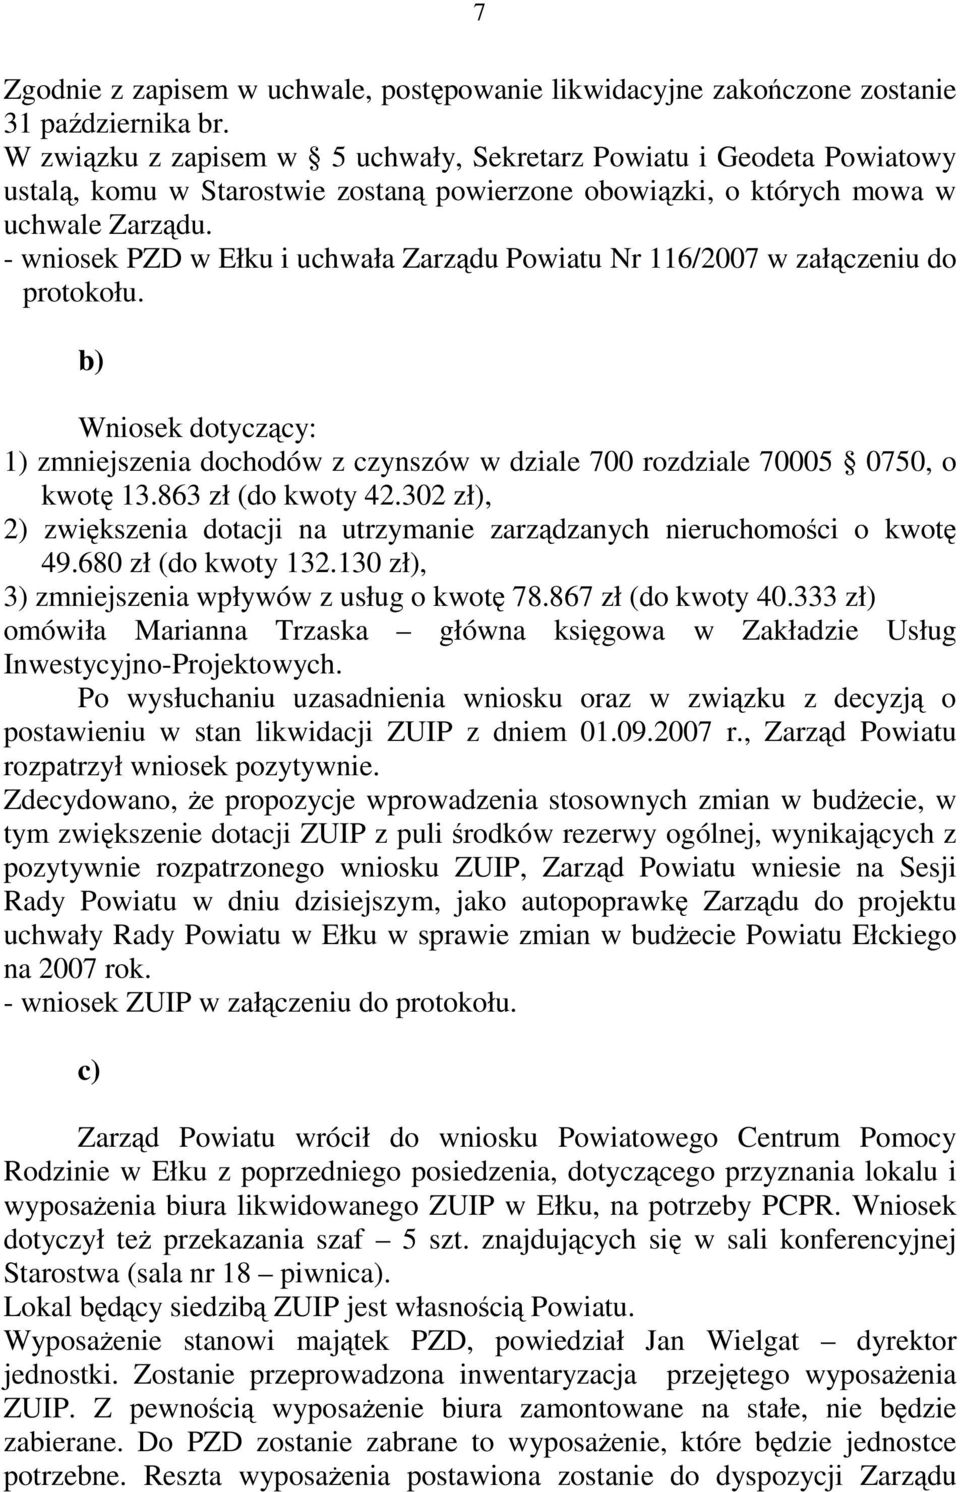 - wniosek PZD w Ełku i uchwała Zarządu Powiatu Nr 116/2007 w załączeniu do protokołu. b) Wniosek dotyczący: 1) zmniejszenia dochodów z czynszów w dziale 700 rozdziale 70005 0750, o kwotę 13.